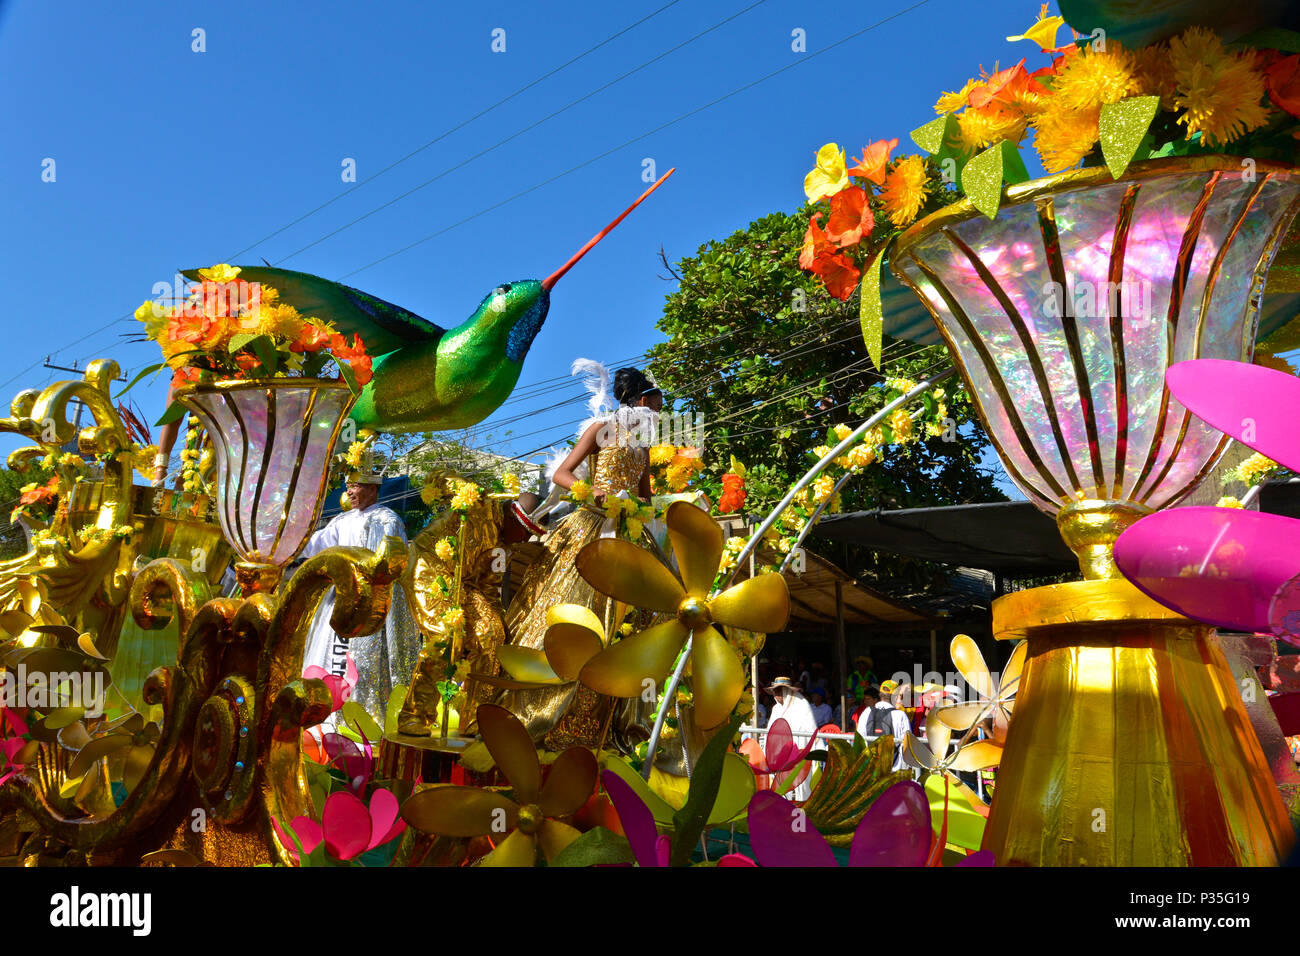 Schlacht von Blumen, Barranquilla Karneval. Stockfoto